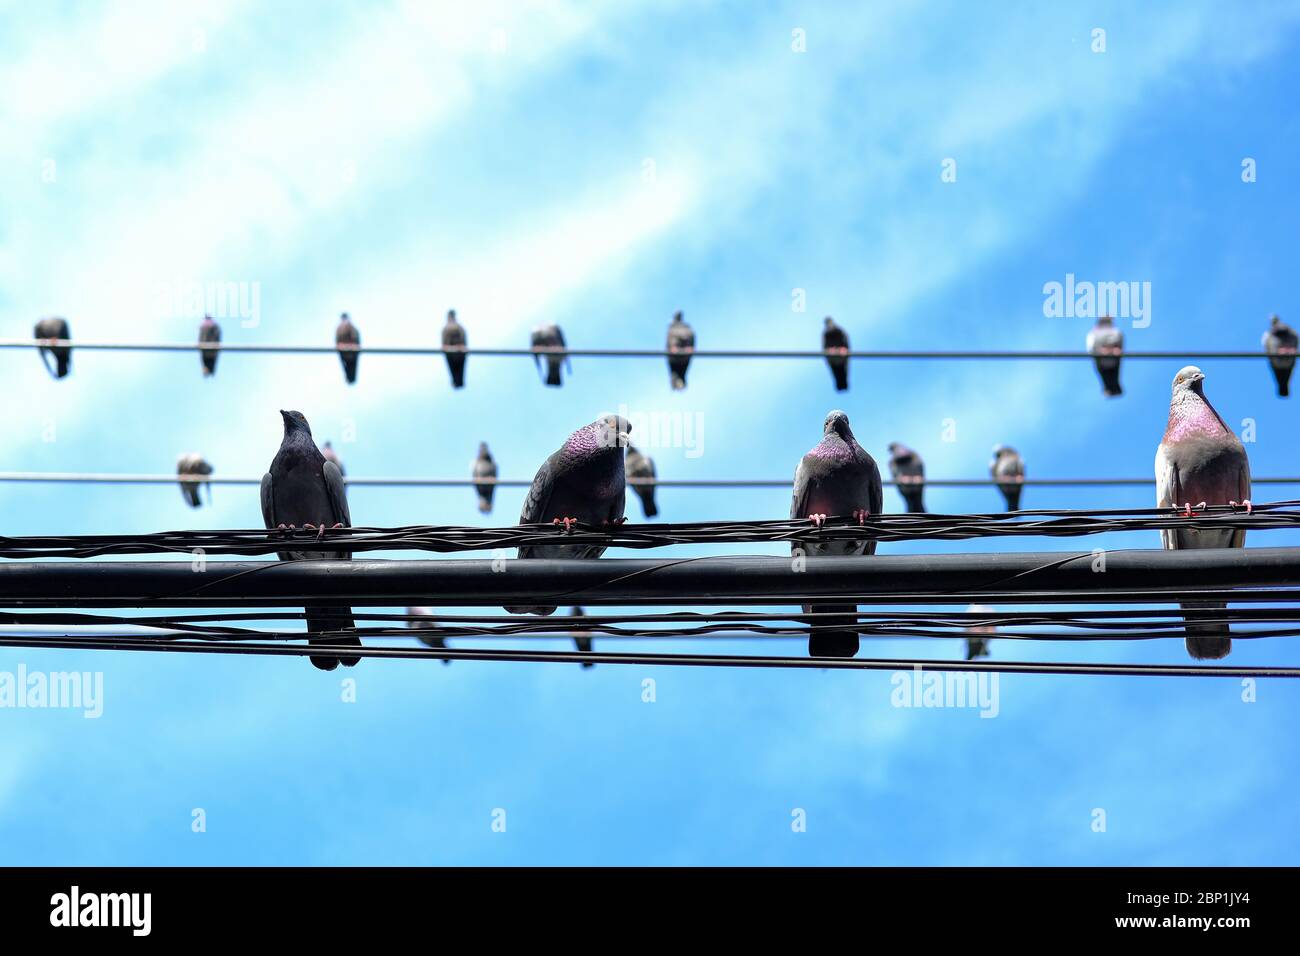 Unterseite von Vögeln auf Drähten, Stromkabeln, elektrischen Drähten stehen. Blauer Himmel Hintergrund. Stockfoto